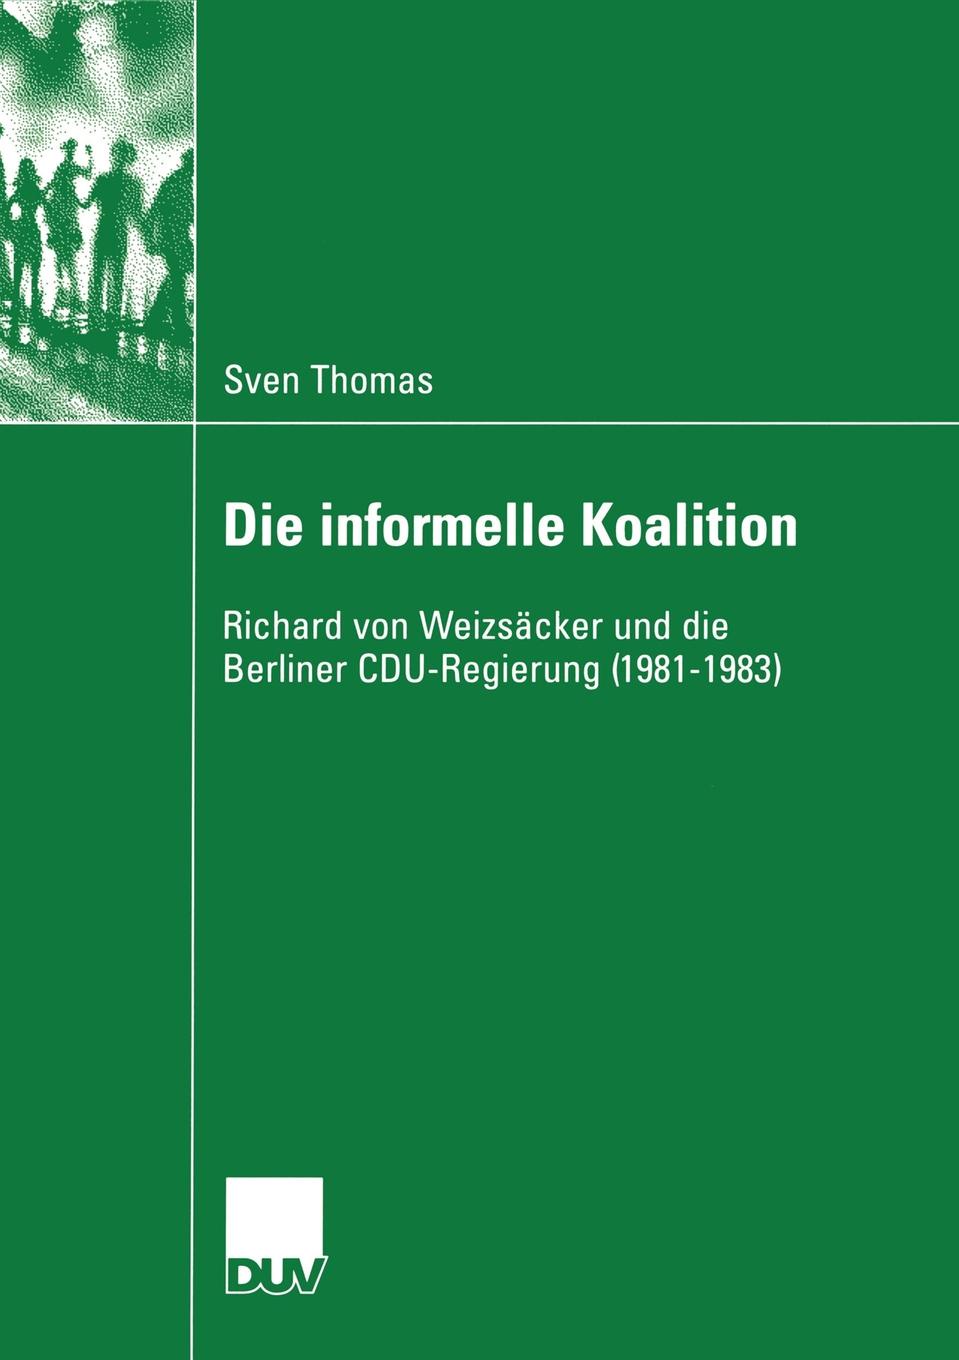 Die informelle Koalition. Richard von Weizsacker und die Berliner CDU-Regierung (1981-1983)